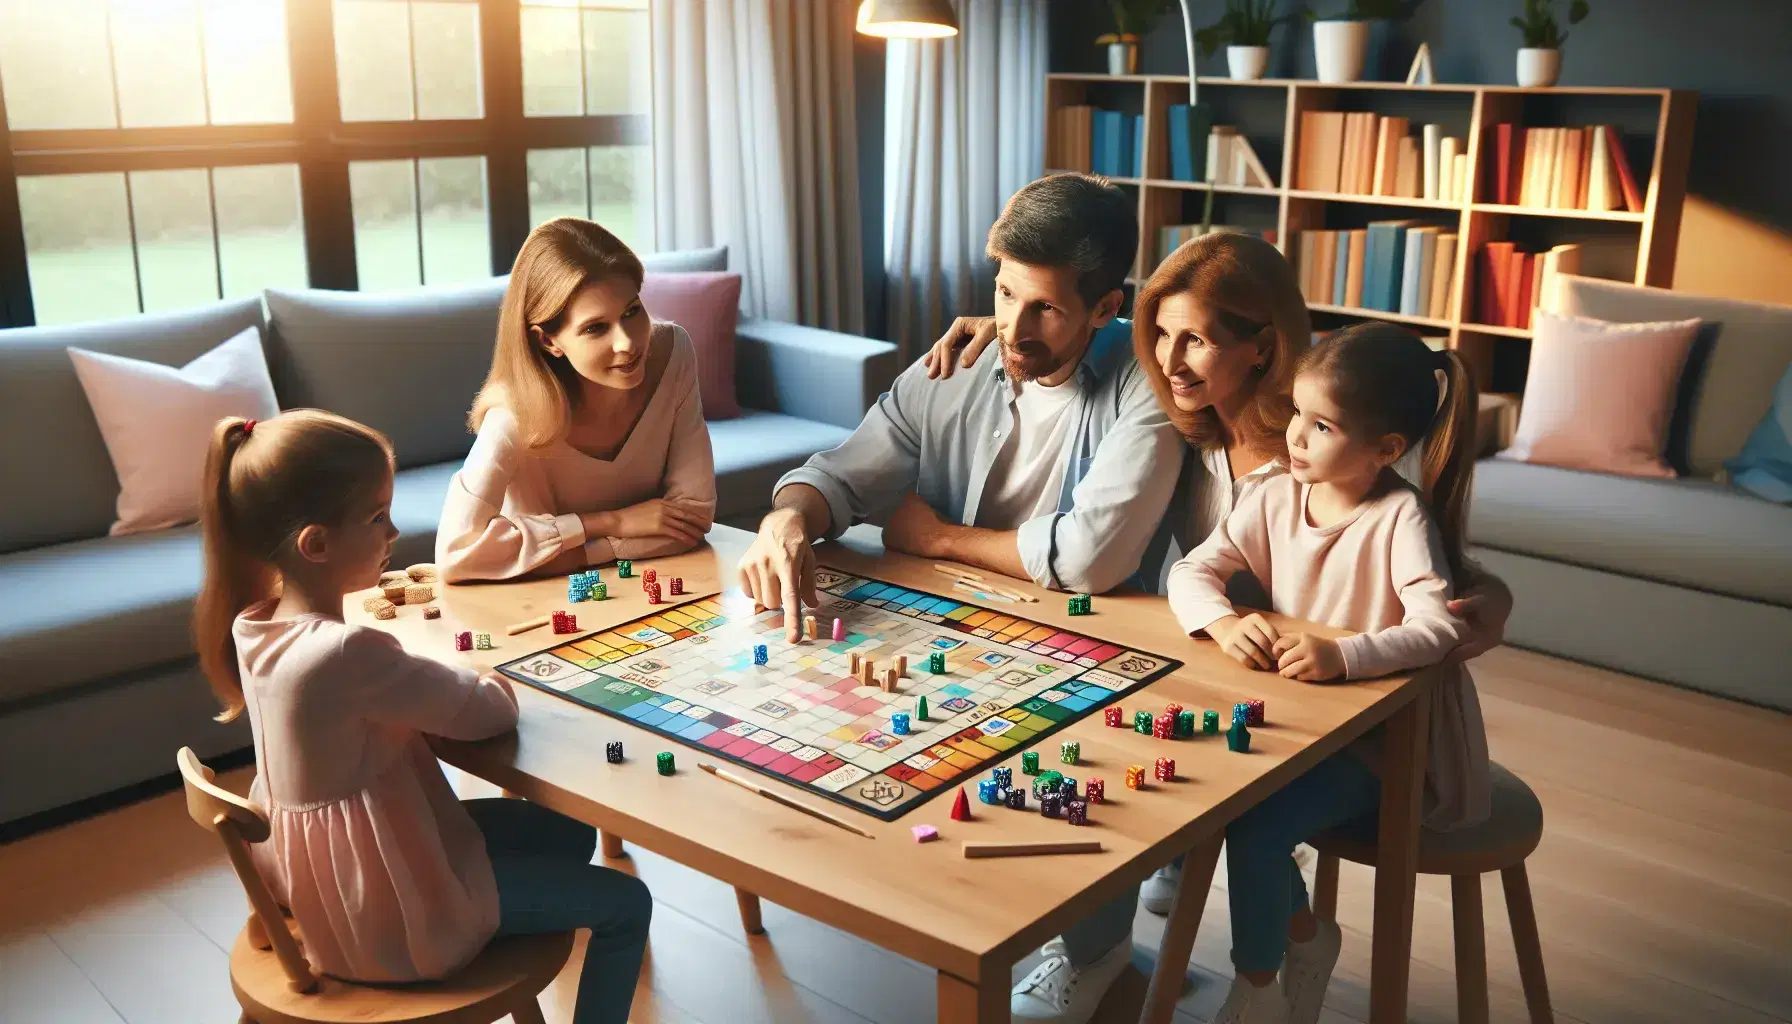 Familia disfrutando de un juego de mesa educativo en un ambiente hogareño con estantería de libros y planta verde al fondo.